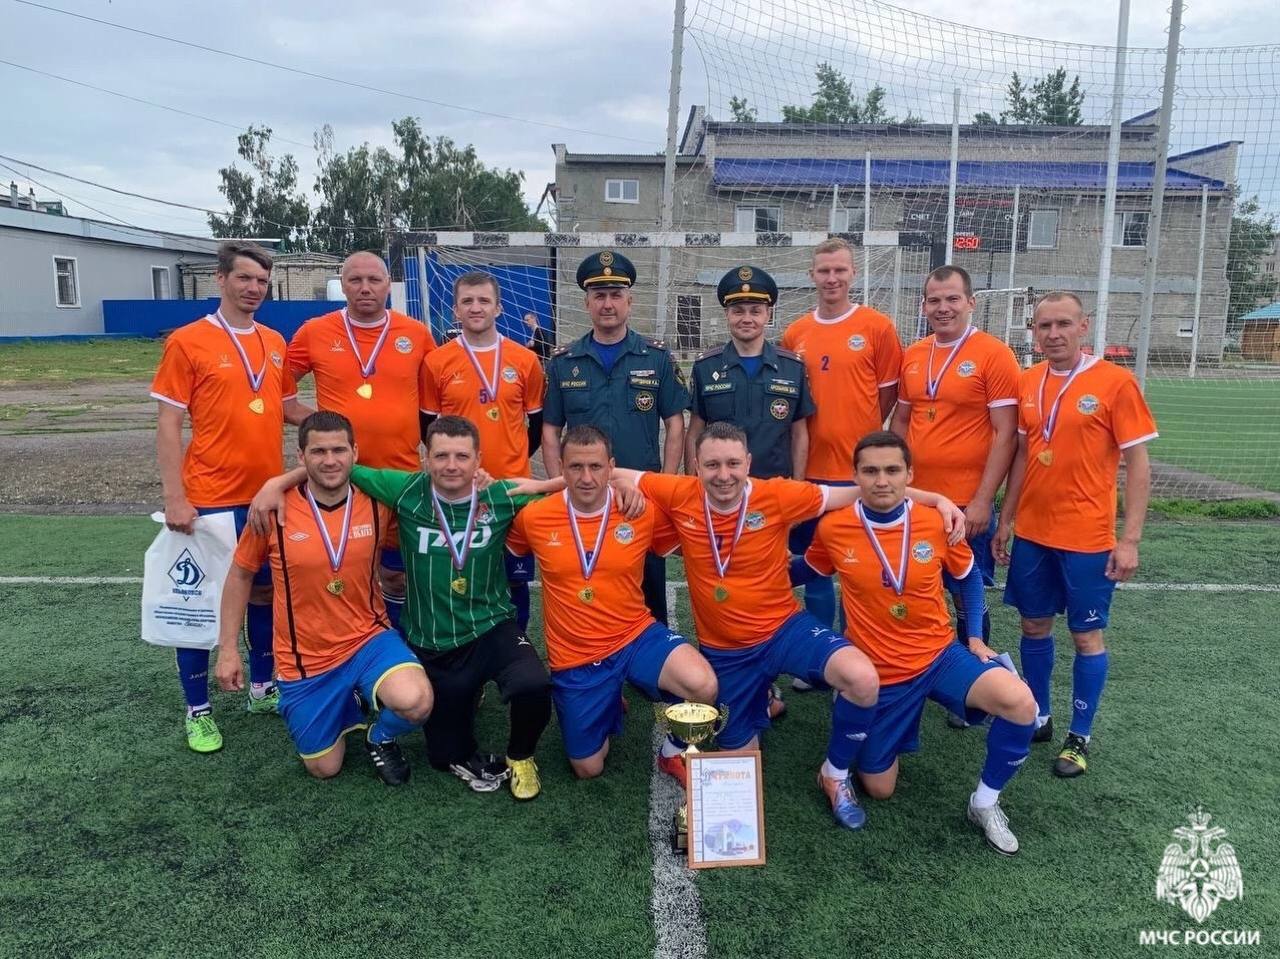 Ульяновская команда МЧС выиграла в турнире по мини-футболу